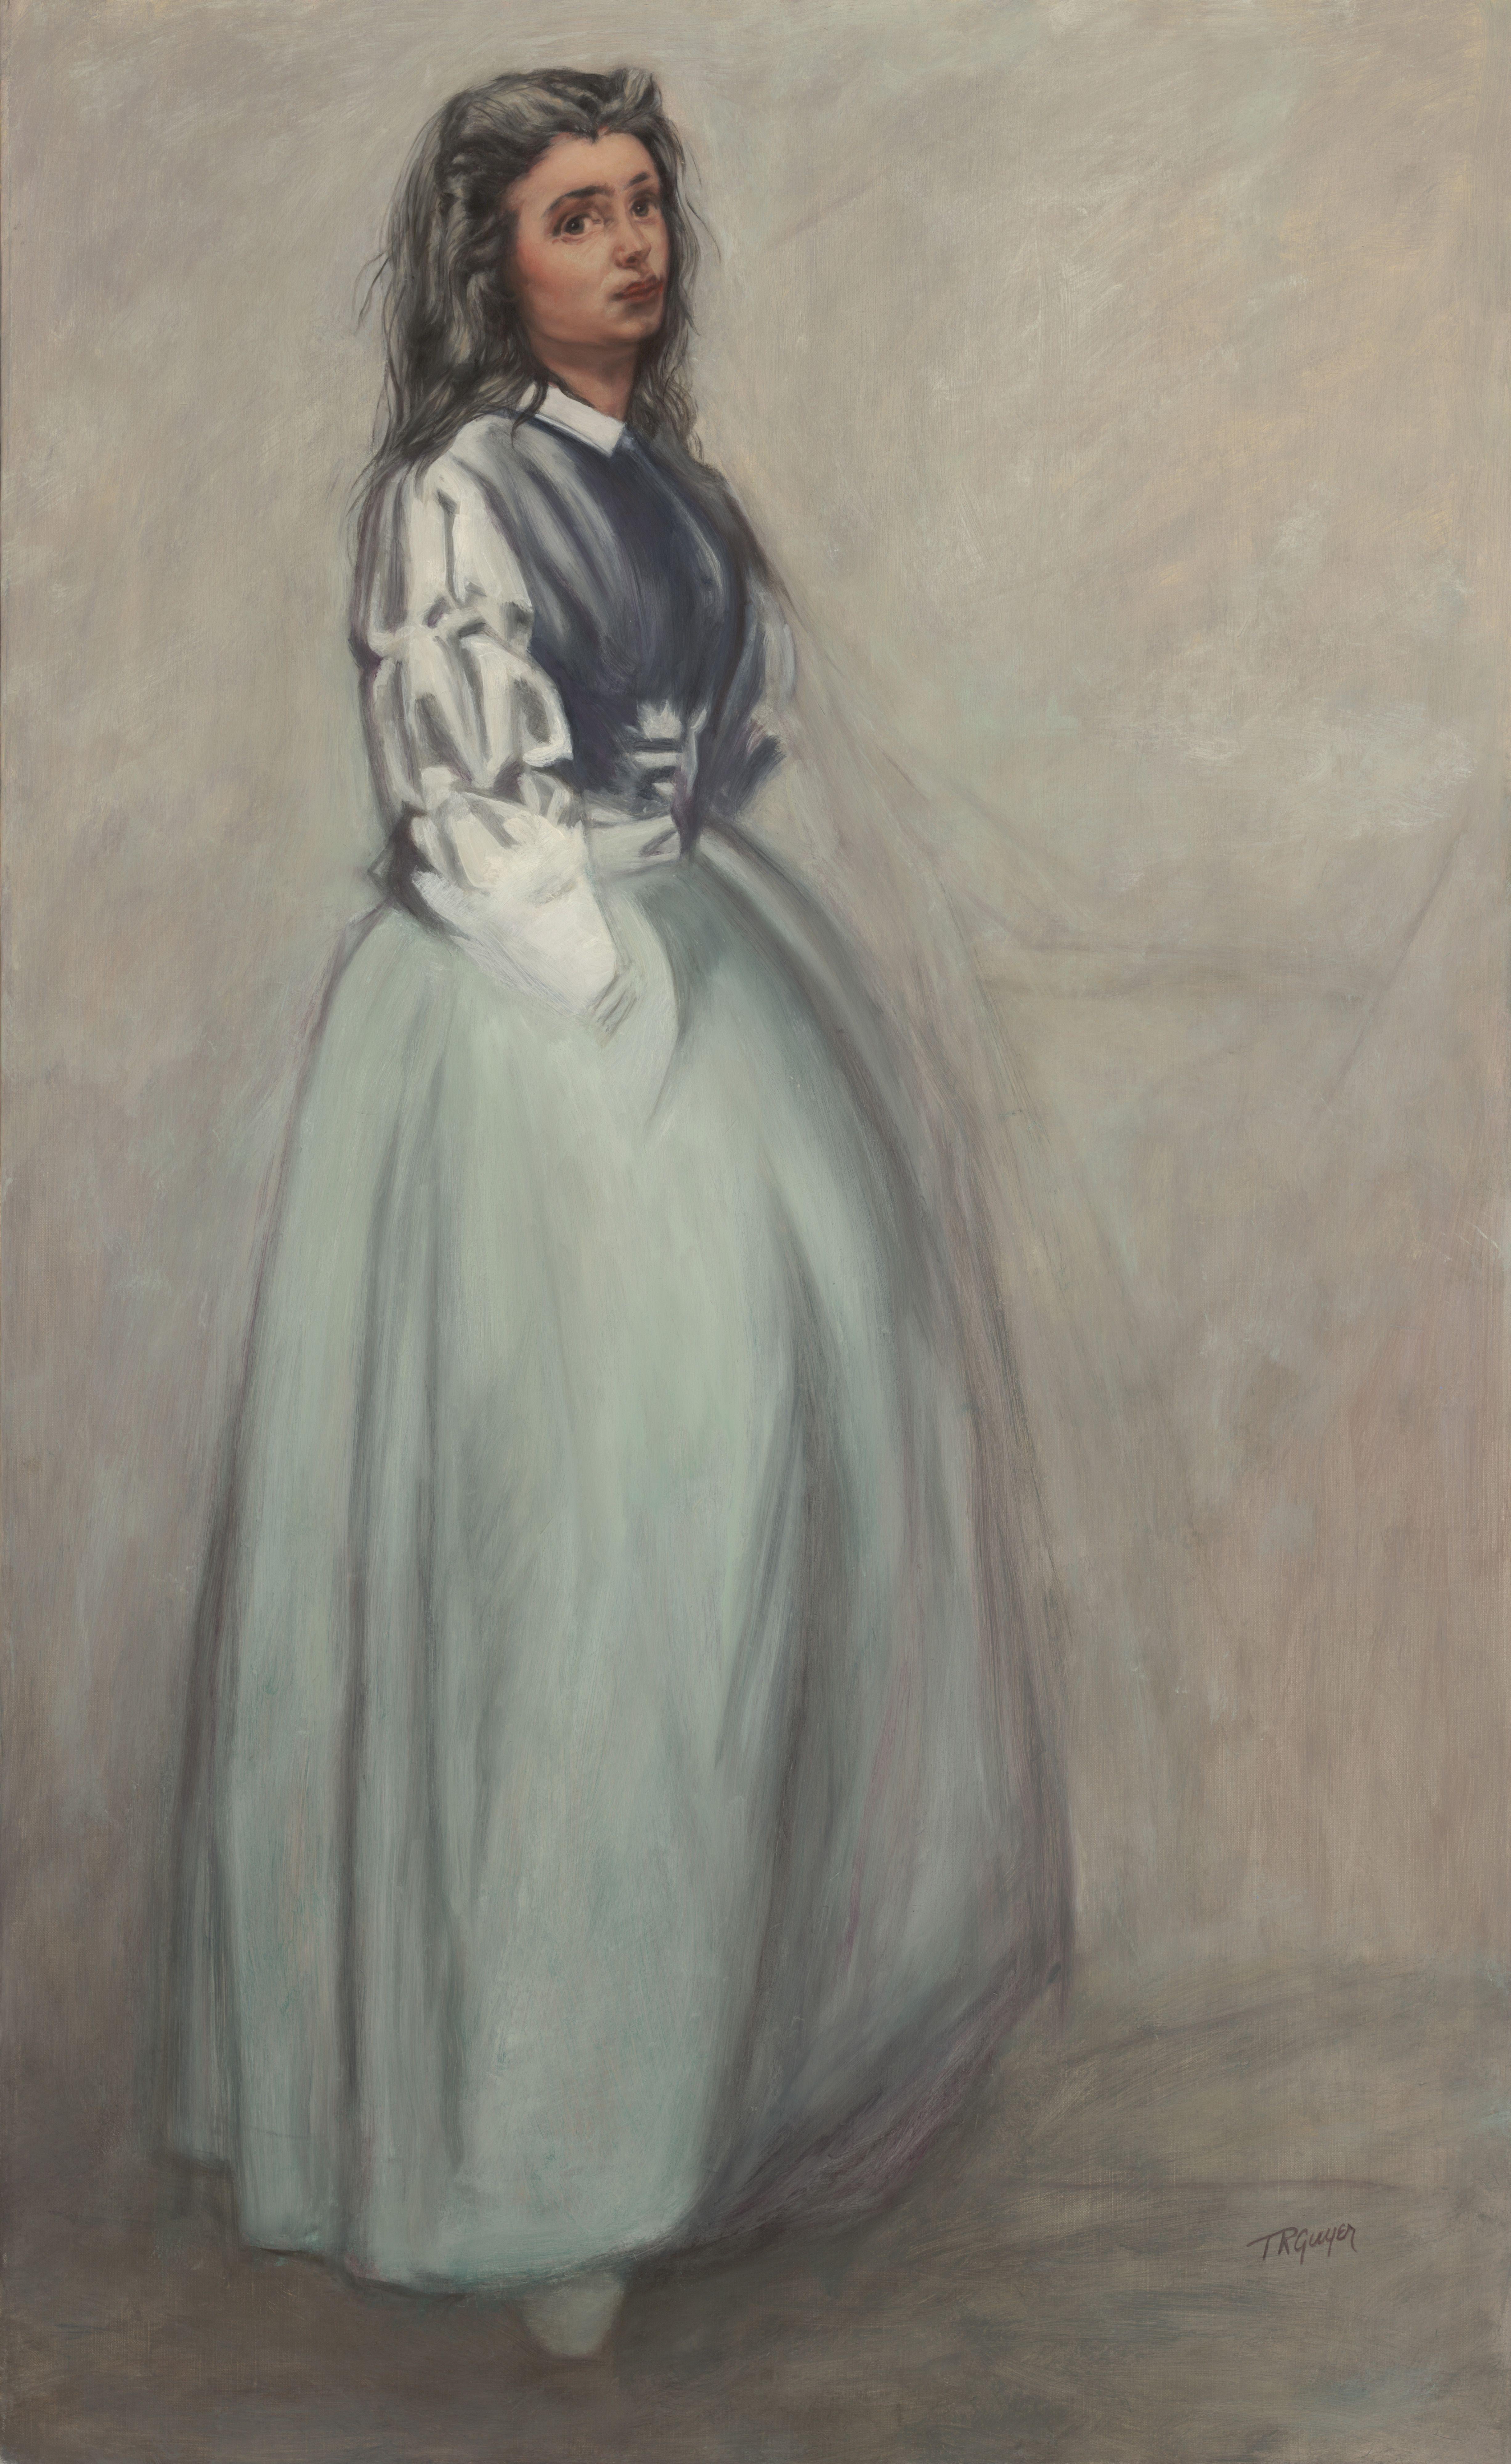 Fumette stehend, nach einer Radierung von James Whistler, Gemälde, Öl auf Leinwand – Painting von Terry Guyer